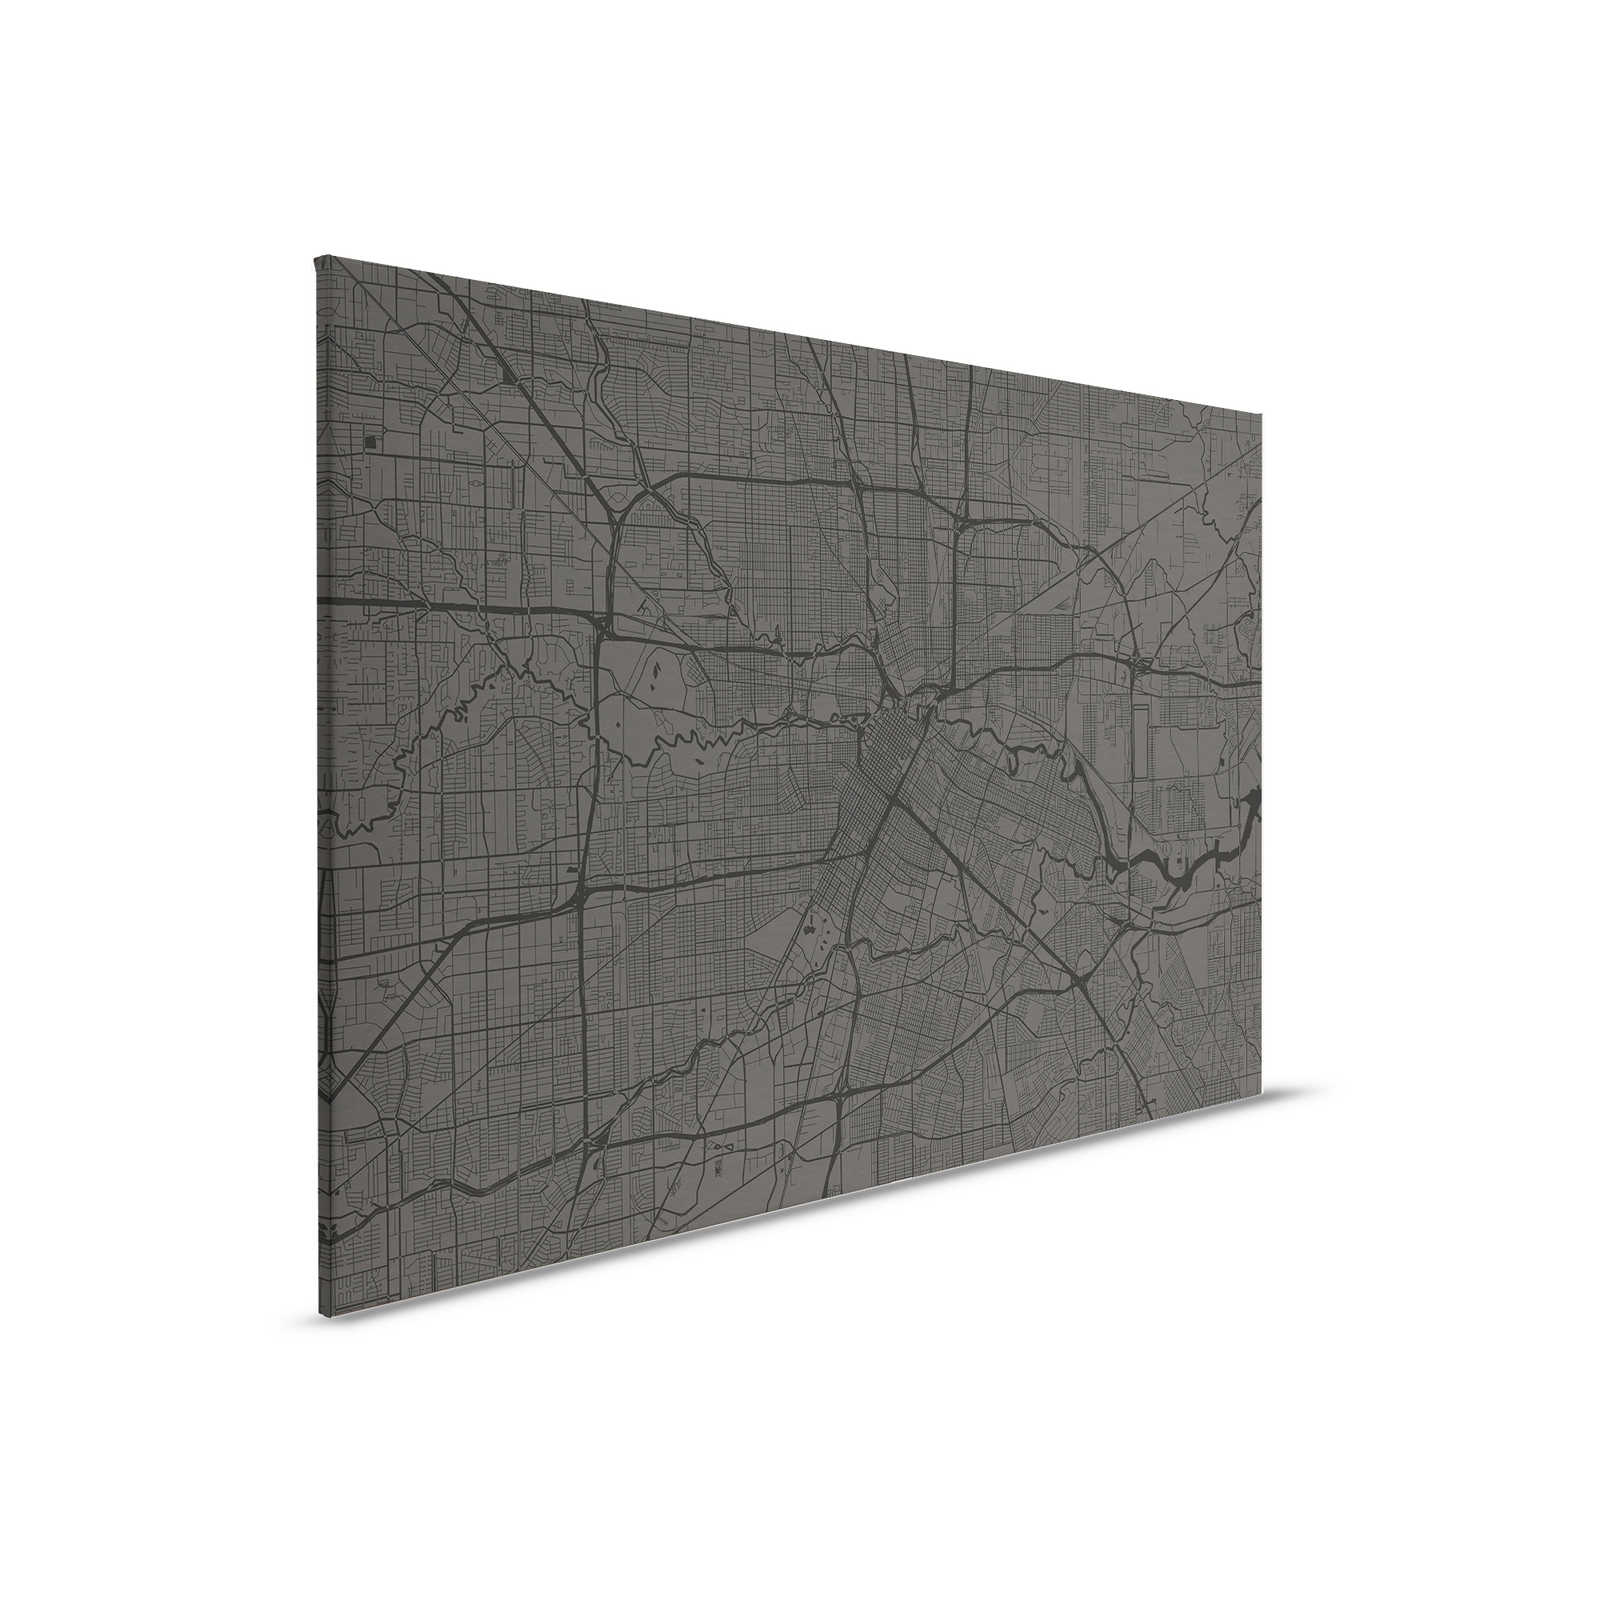         Leinwandbild Stadtkarte mit Straßenverlauf | schwarz – 0,90 m x 0,60 m
    